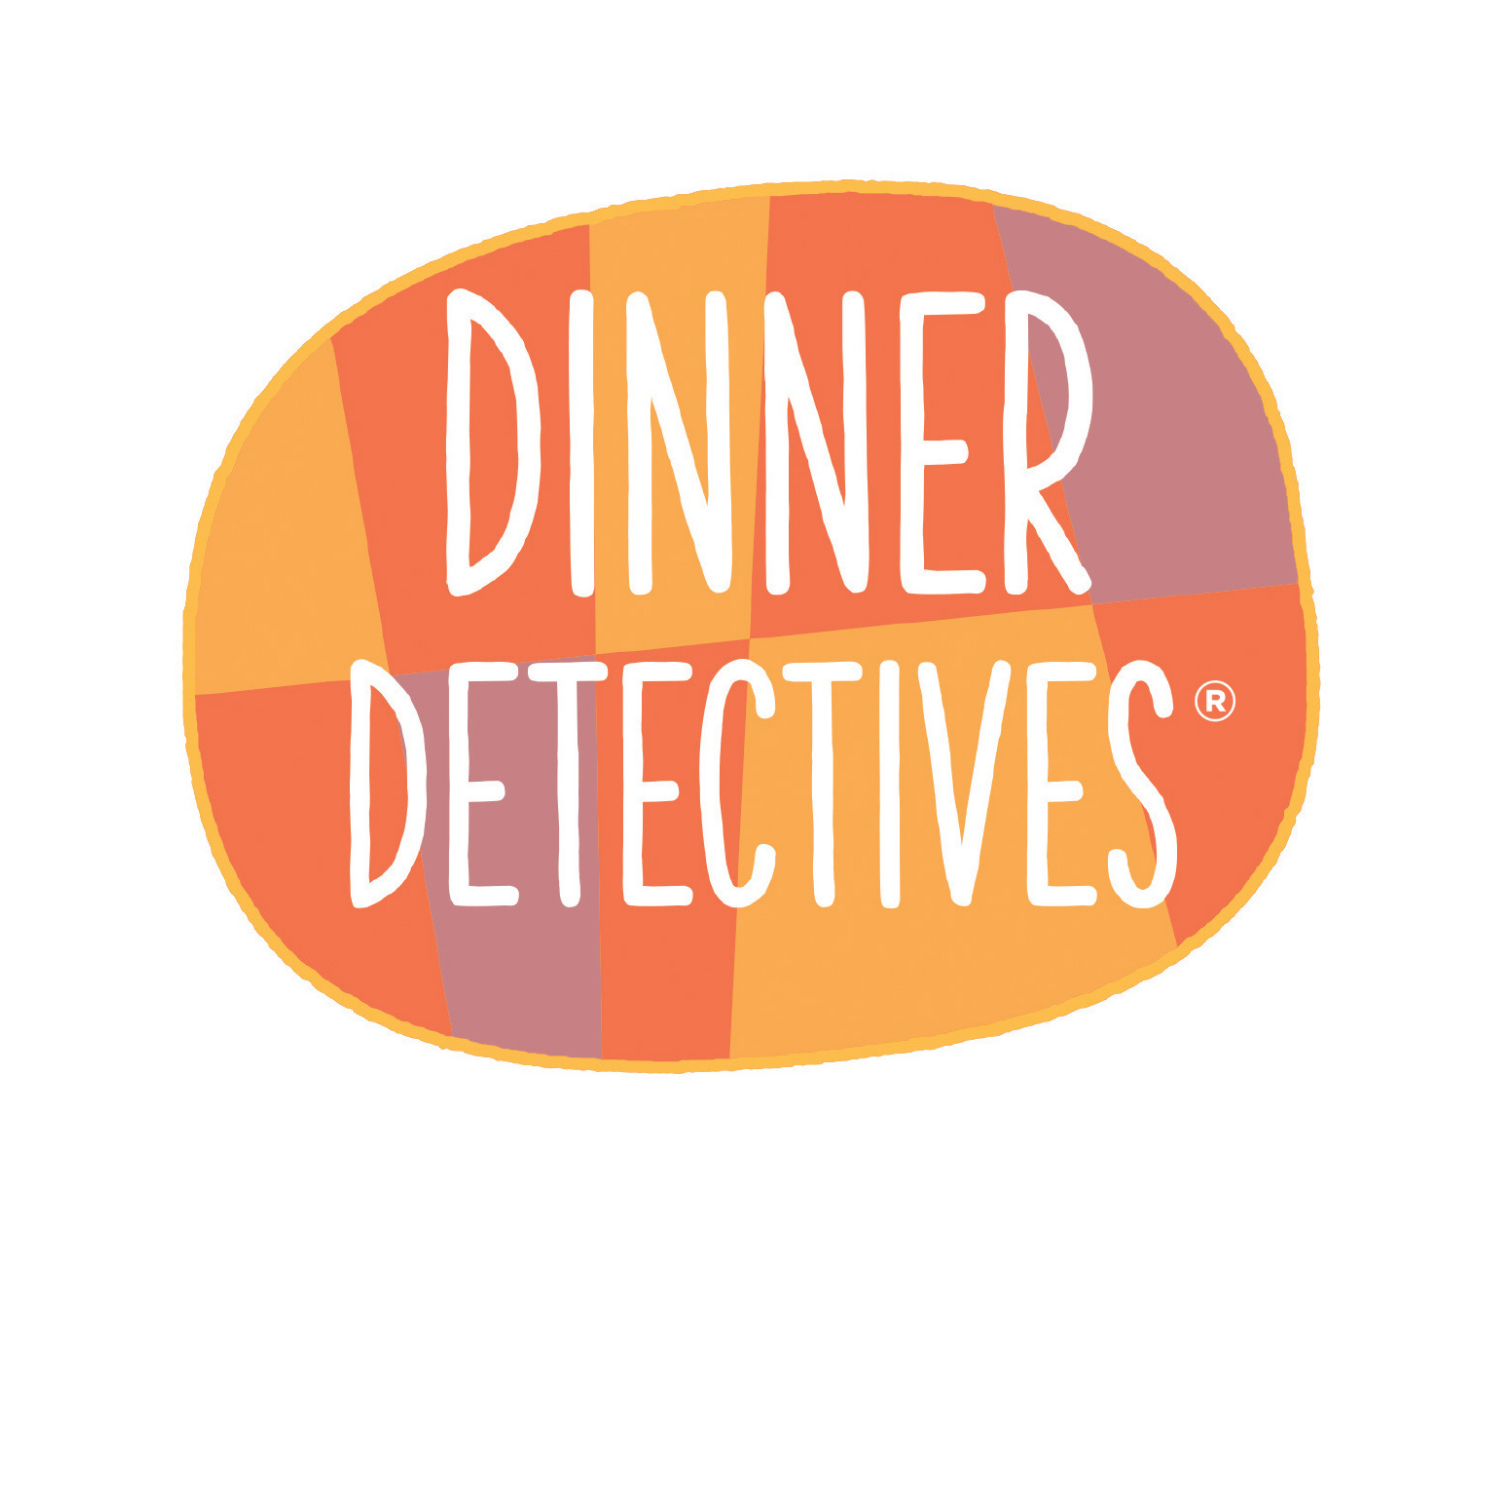 DINNER DETECTIVES